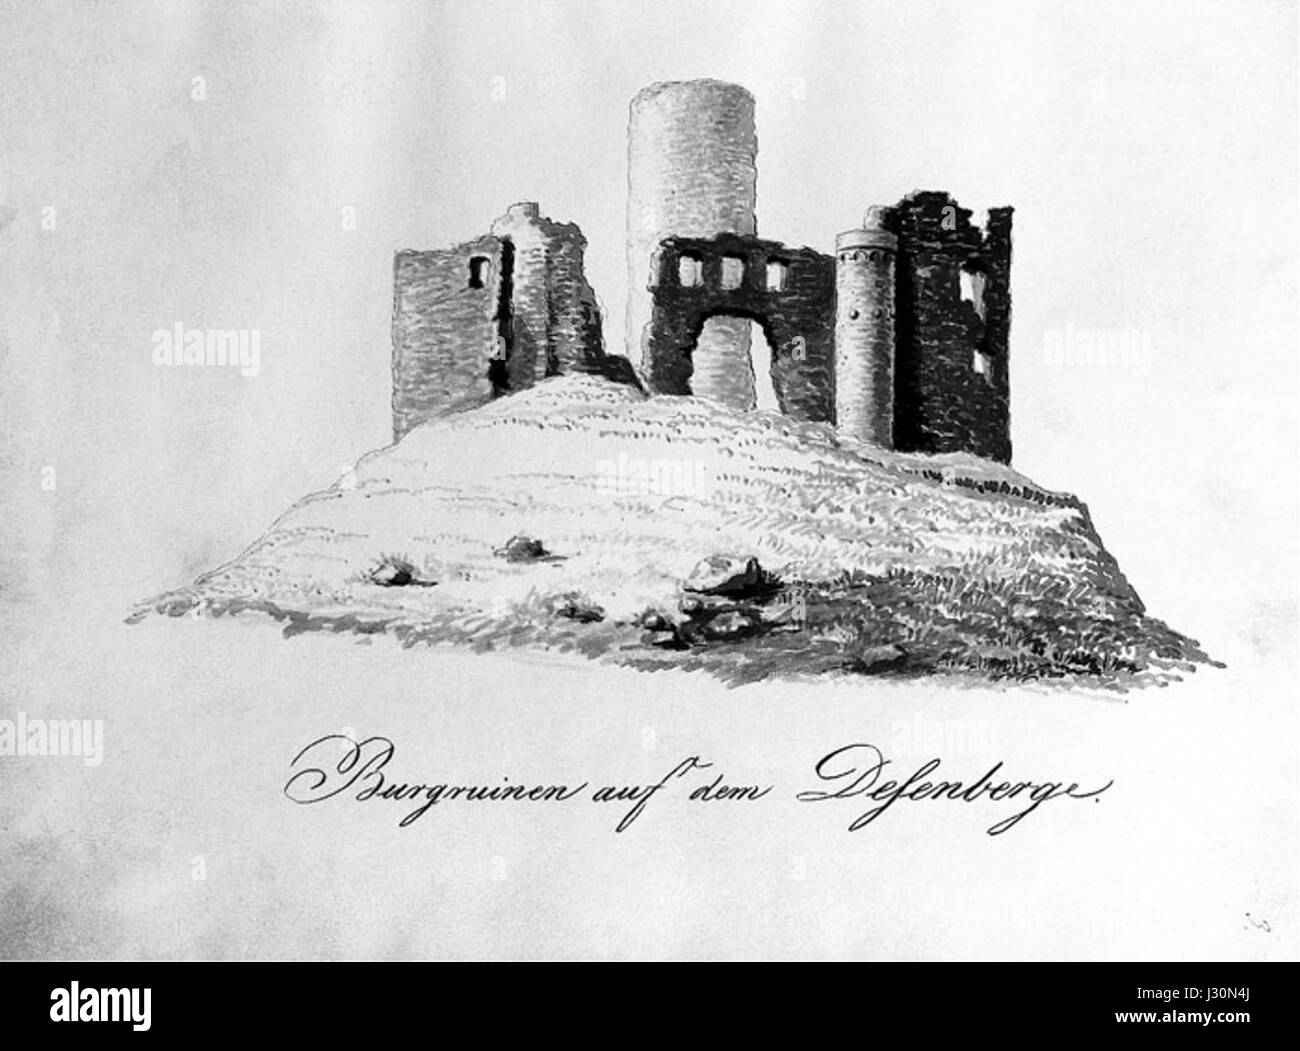 Burgruinen auf dem Desenberge Stock Photo